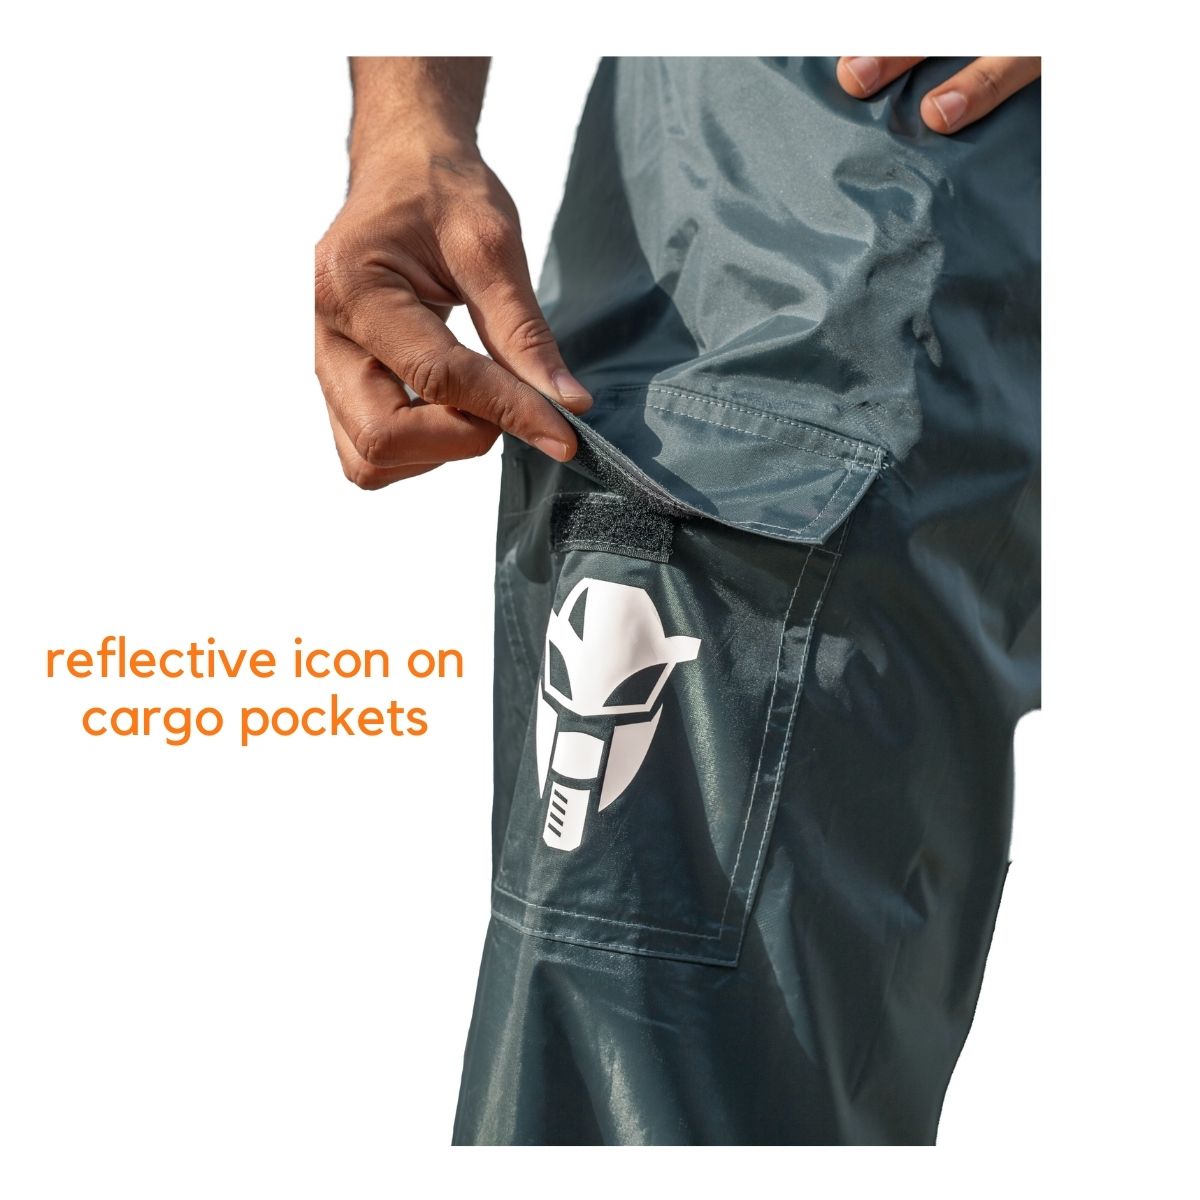 Men's Water-Resistant Cresta Hiking Pants, Natural Fit | Pants at L.L.Bean